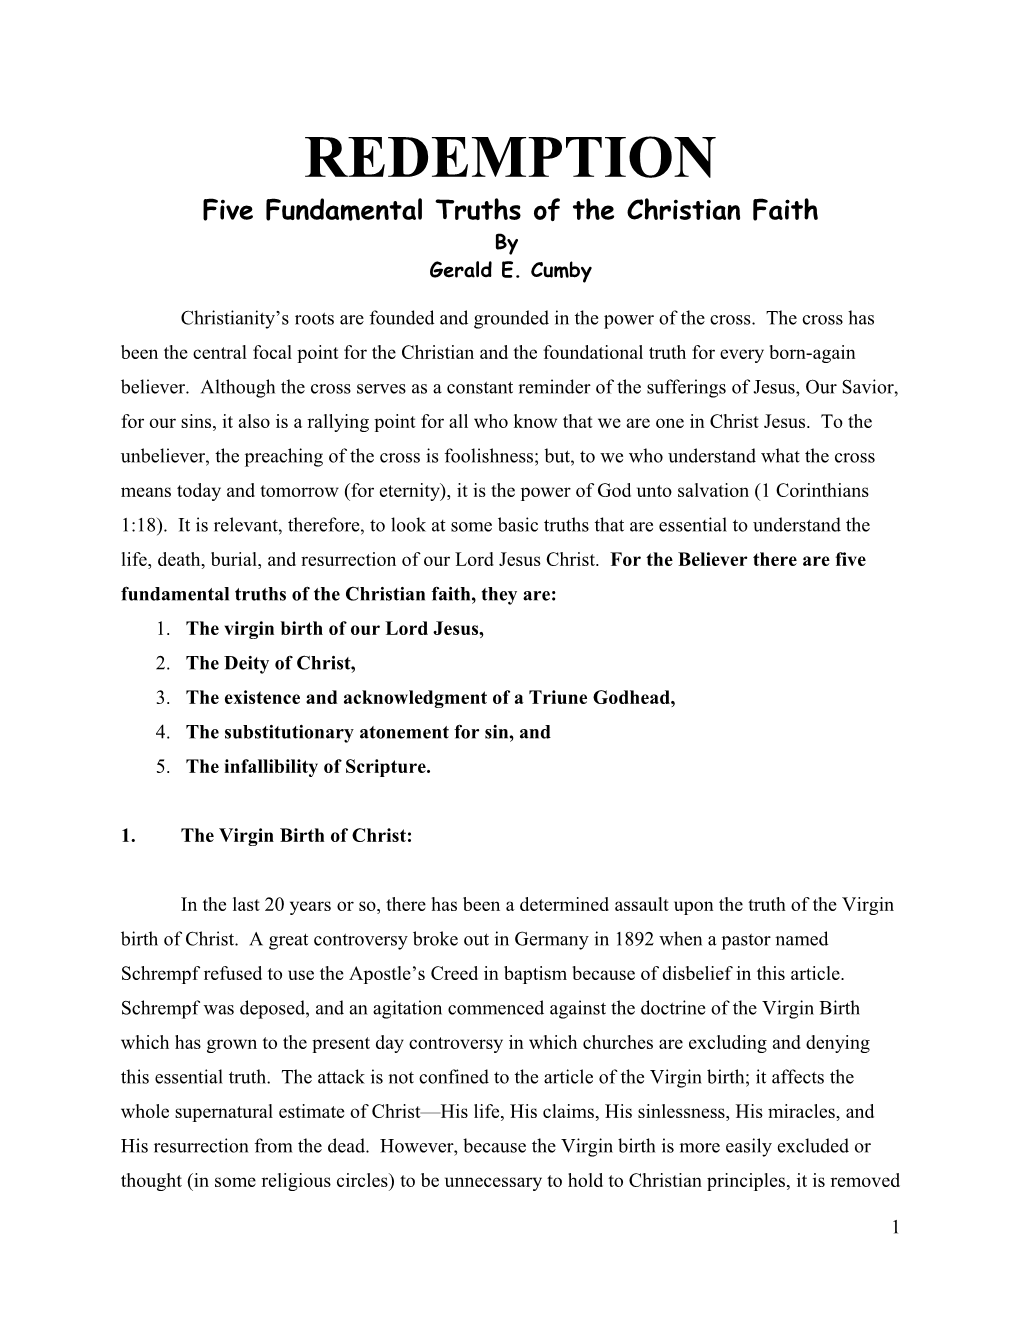 Five Fundamental Truths of the Christian Faith